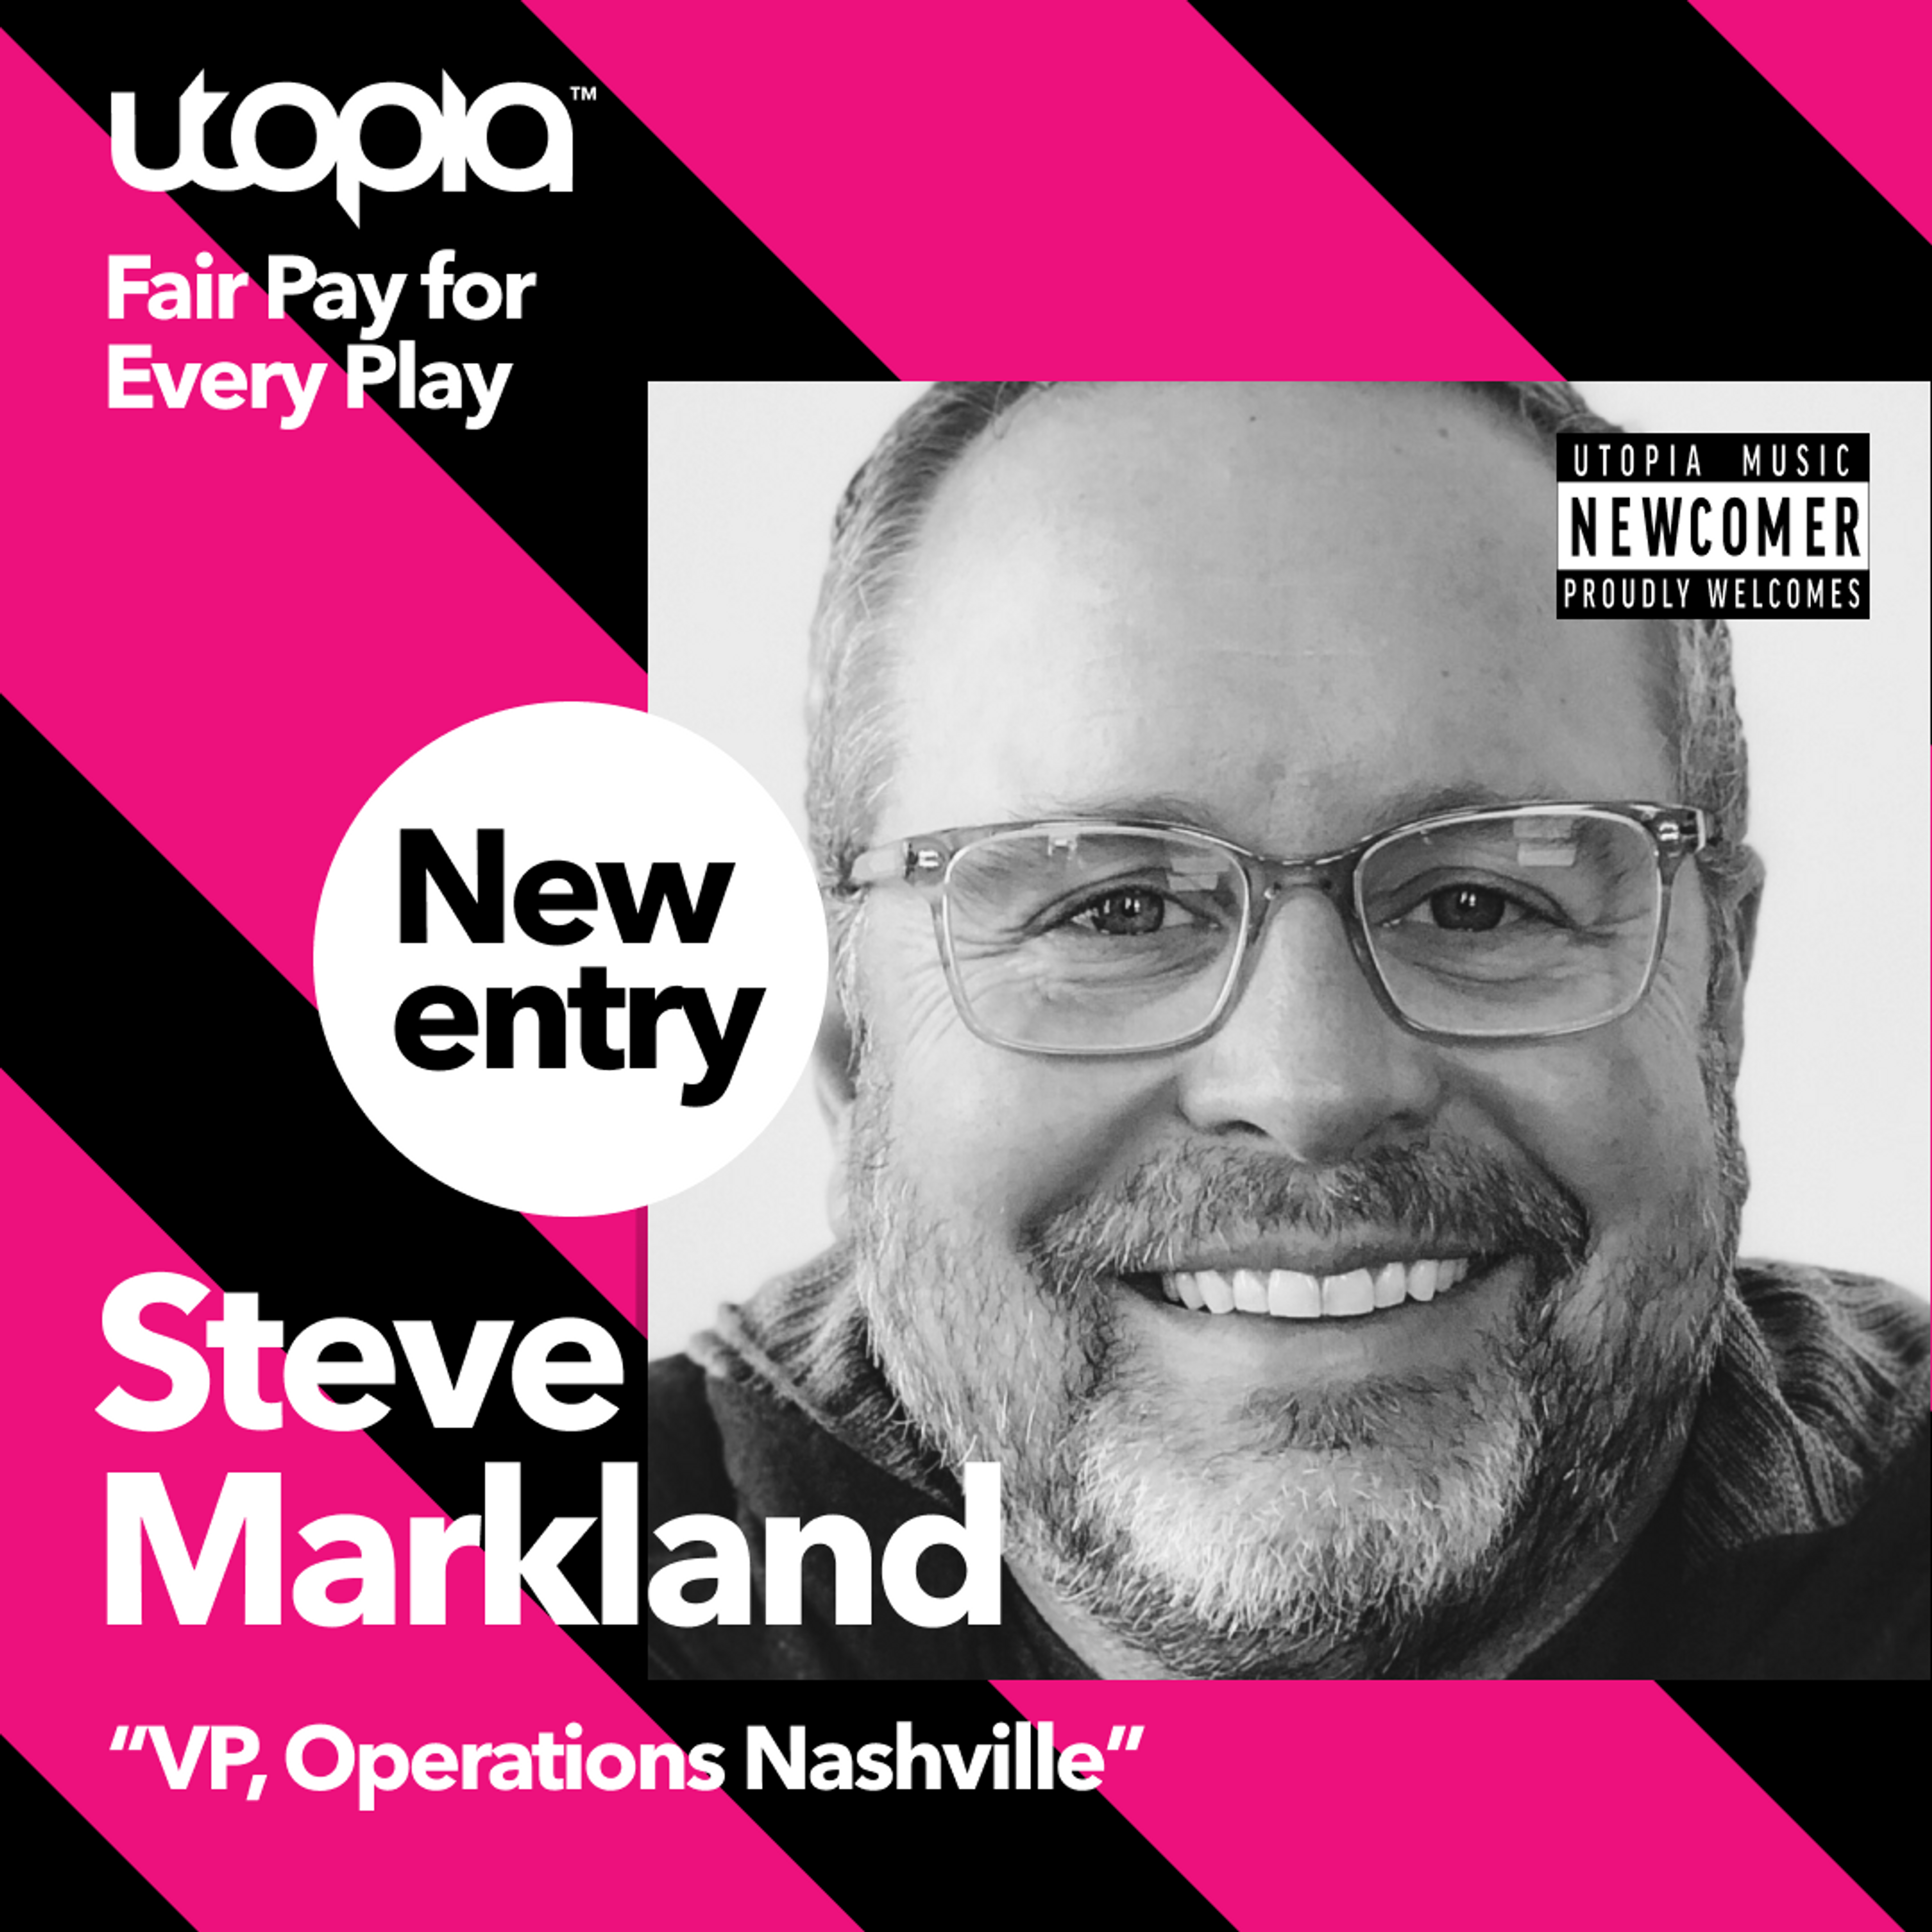 Card image for Steve Markland joins Utopia as VP for Nashville